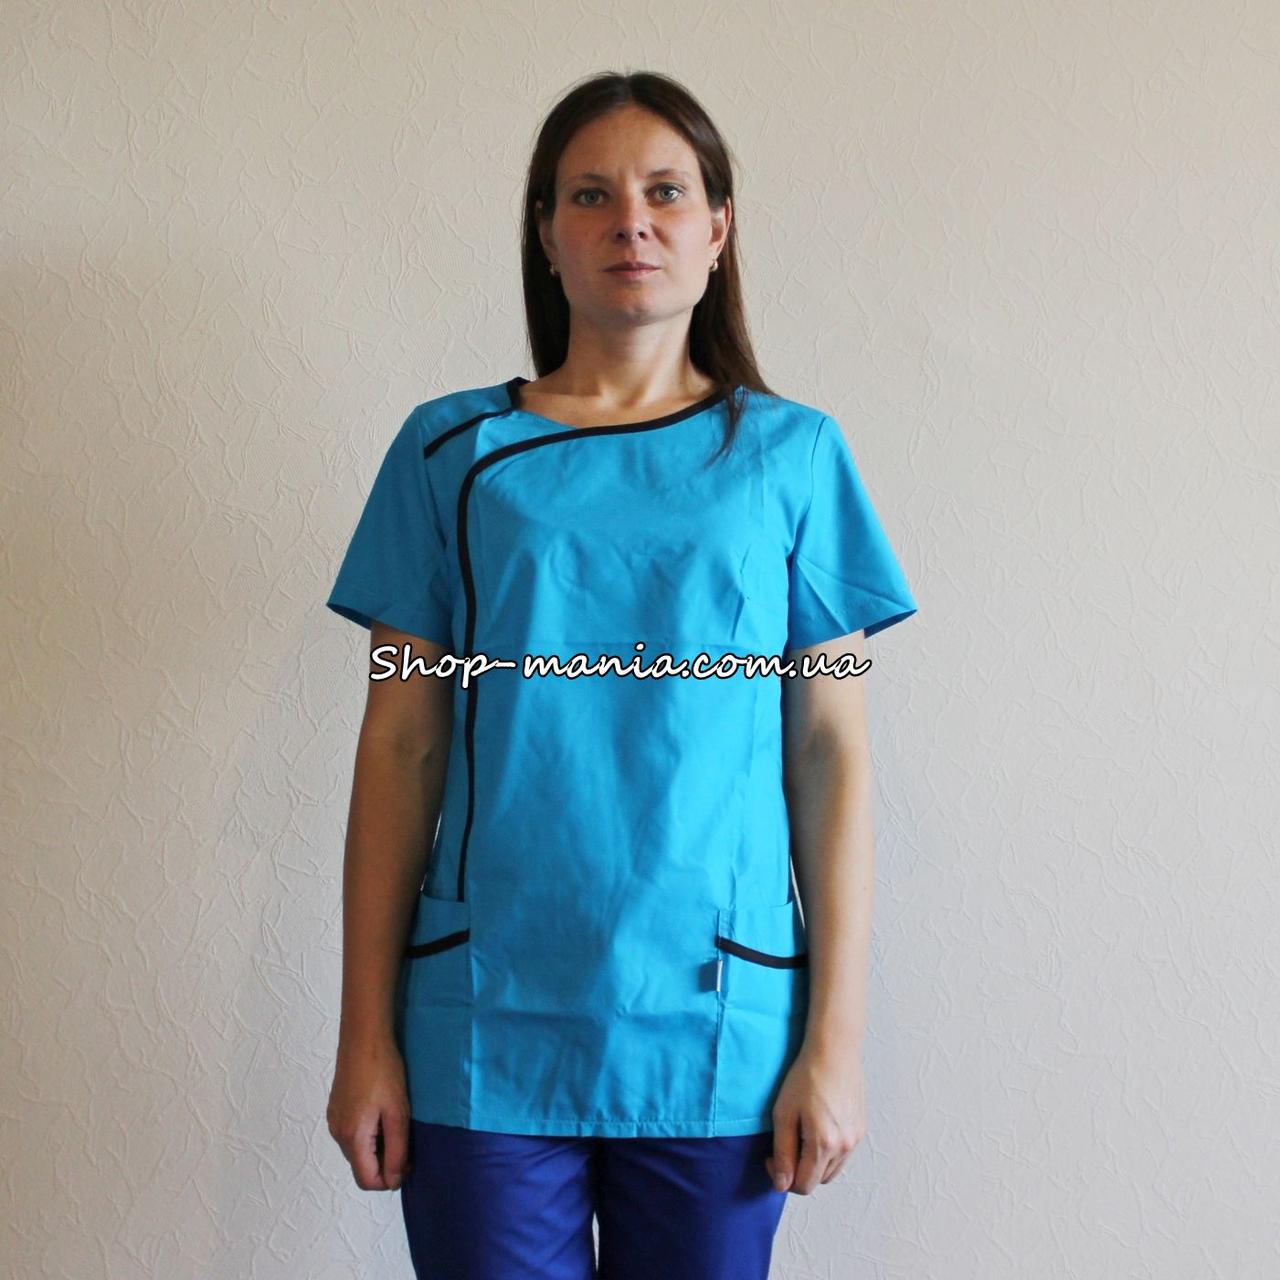 

Женская медицинская куртка SM 1014-7 Odri 40-50p (бирюза-черный) 48, Бирюзовый